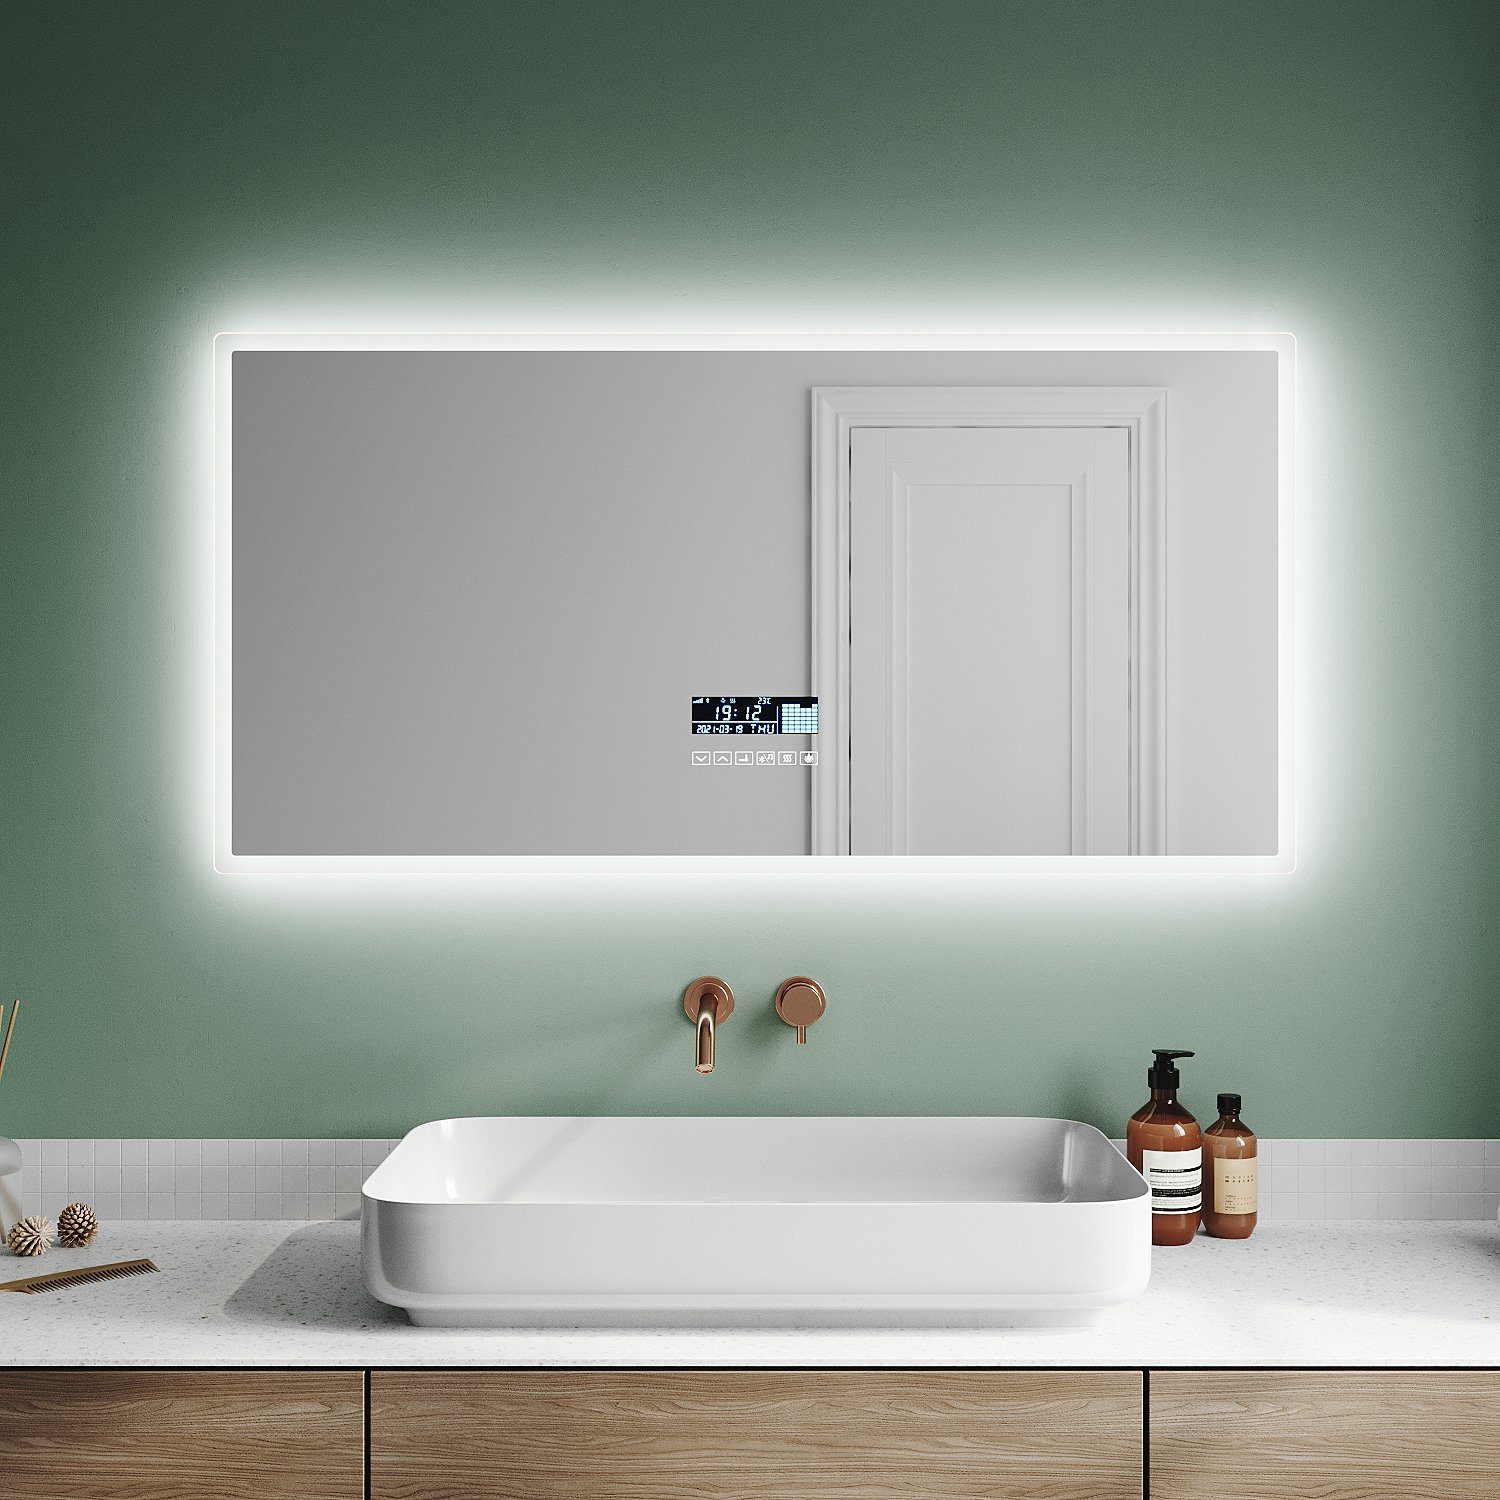 SONNI Badspiegel Bad Spiegel mit Beleuchtung, mit/ohne Bluetooth-Lautsprecher,  120 x 60, LED, Badezimmerspiegel, Beschlagfrei, Wandspiegel, Lichtspiegel,  IP 44, Anti-Beschlag-Funktion